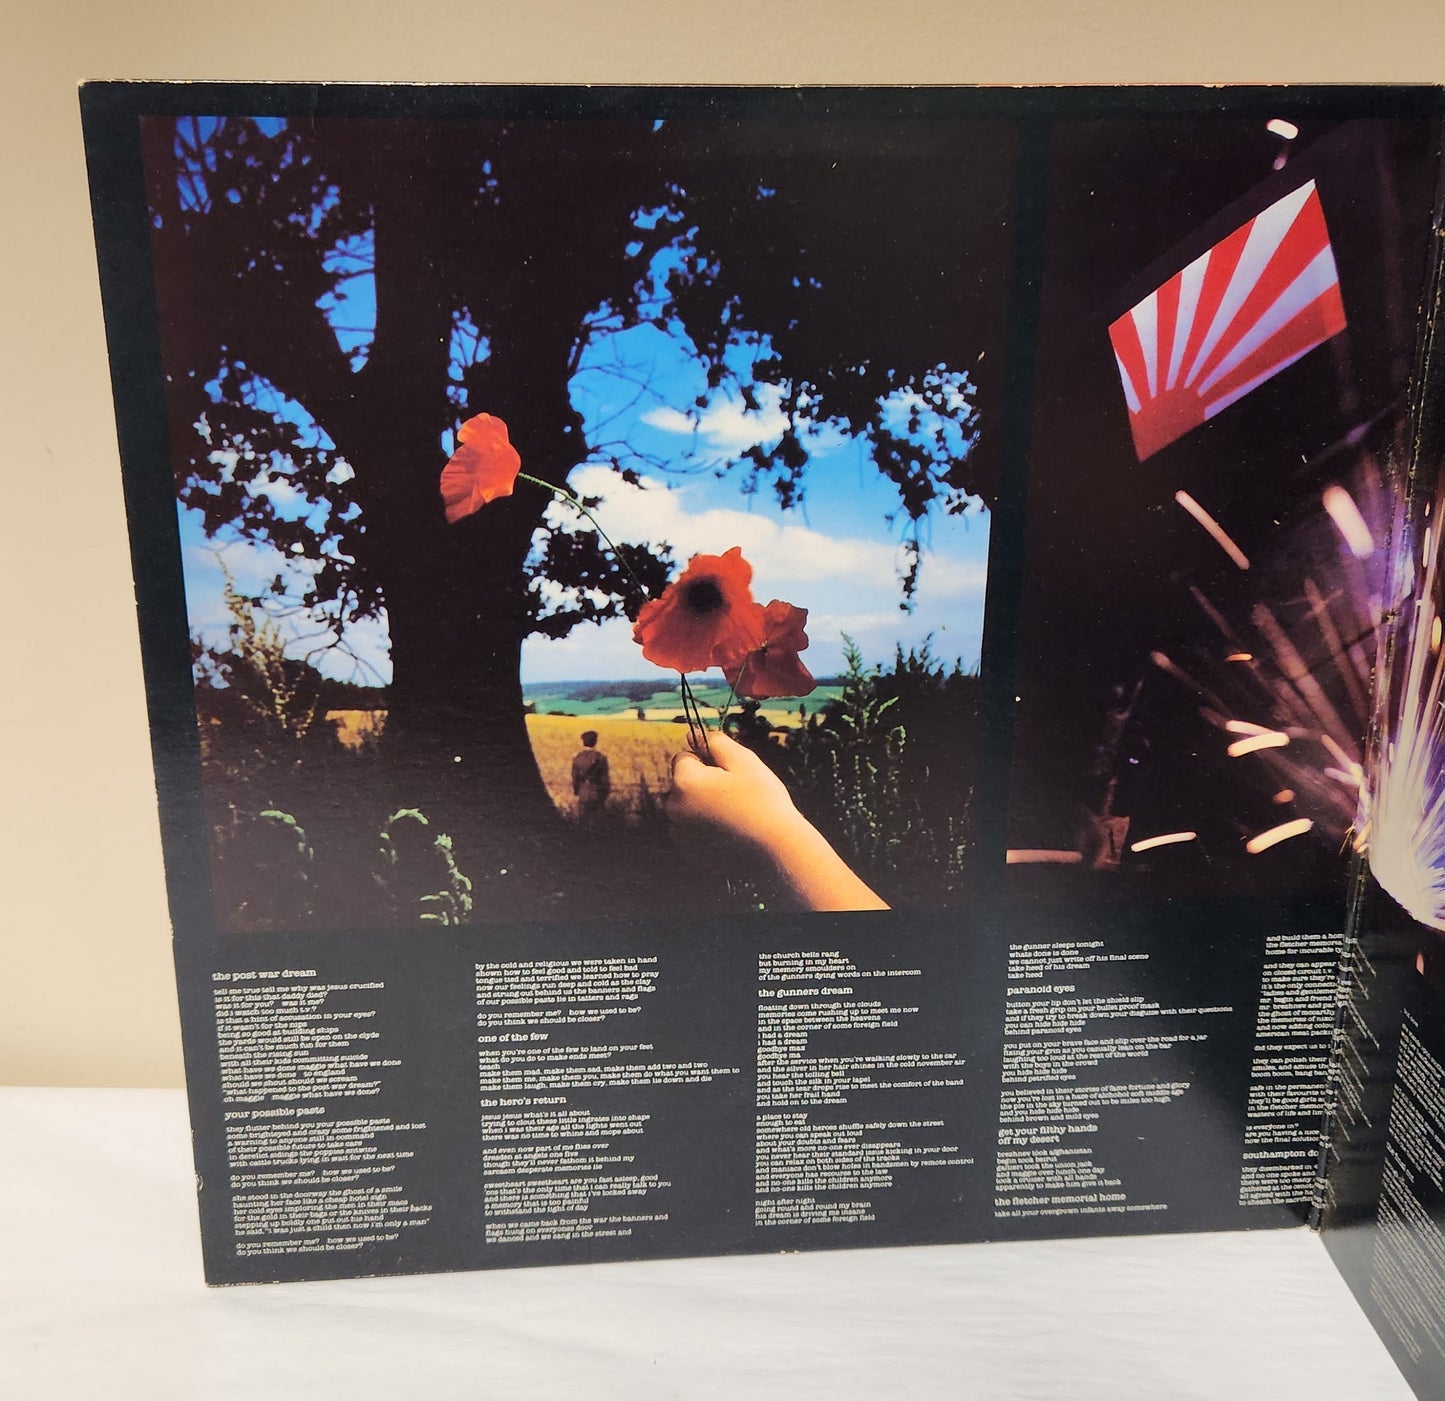 Pink Floyd "The Final Cut" 1983 Progressive Rock Record Album